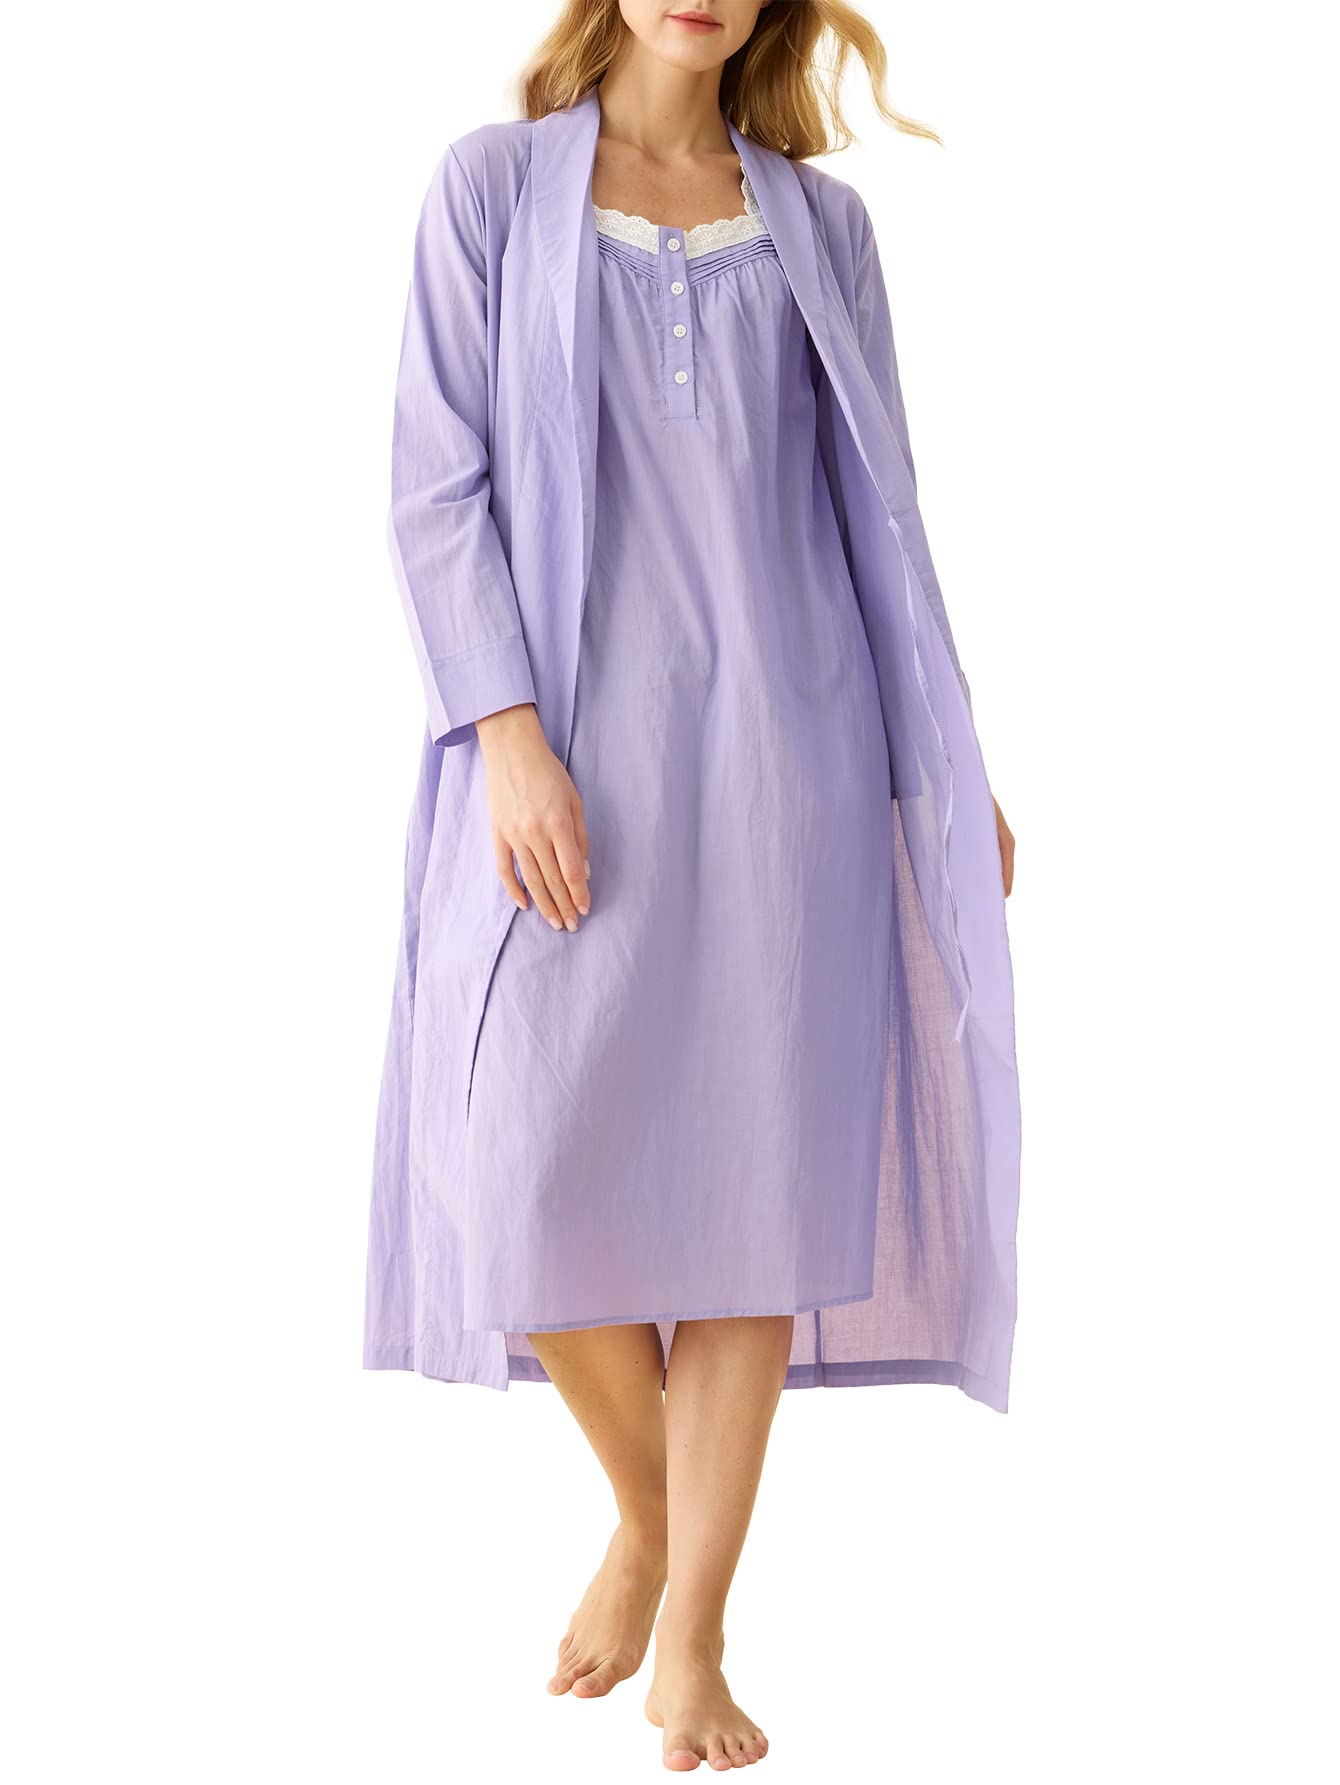 Sleeveless Cotton Nightdress, Beautiful Nightgown, 100% Cotton